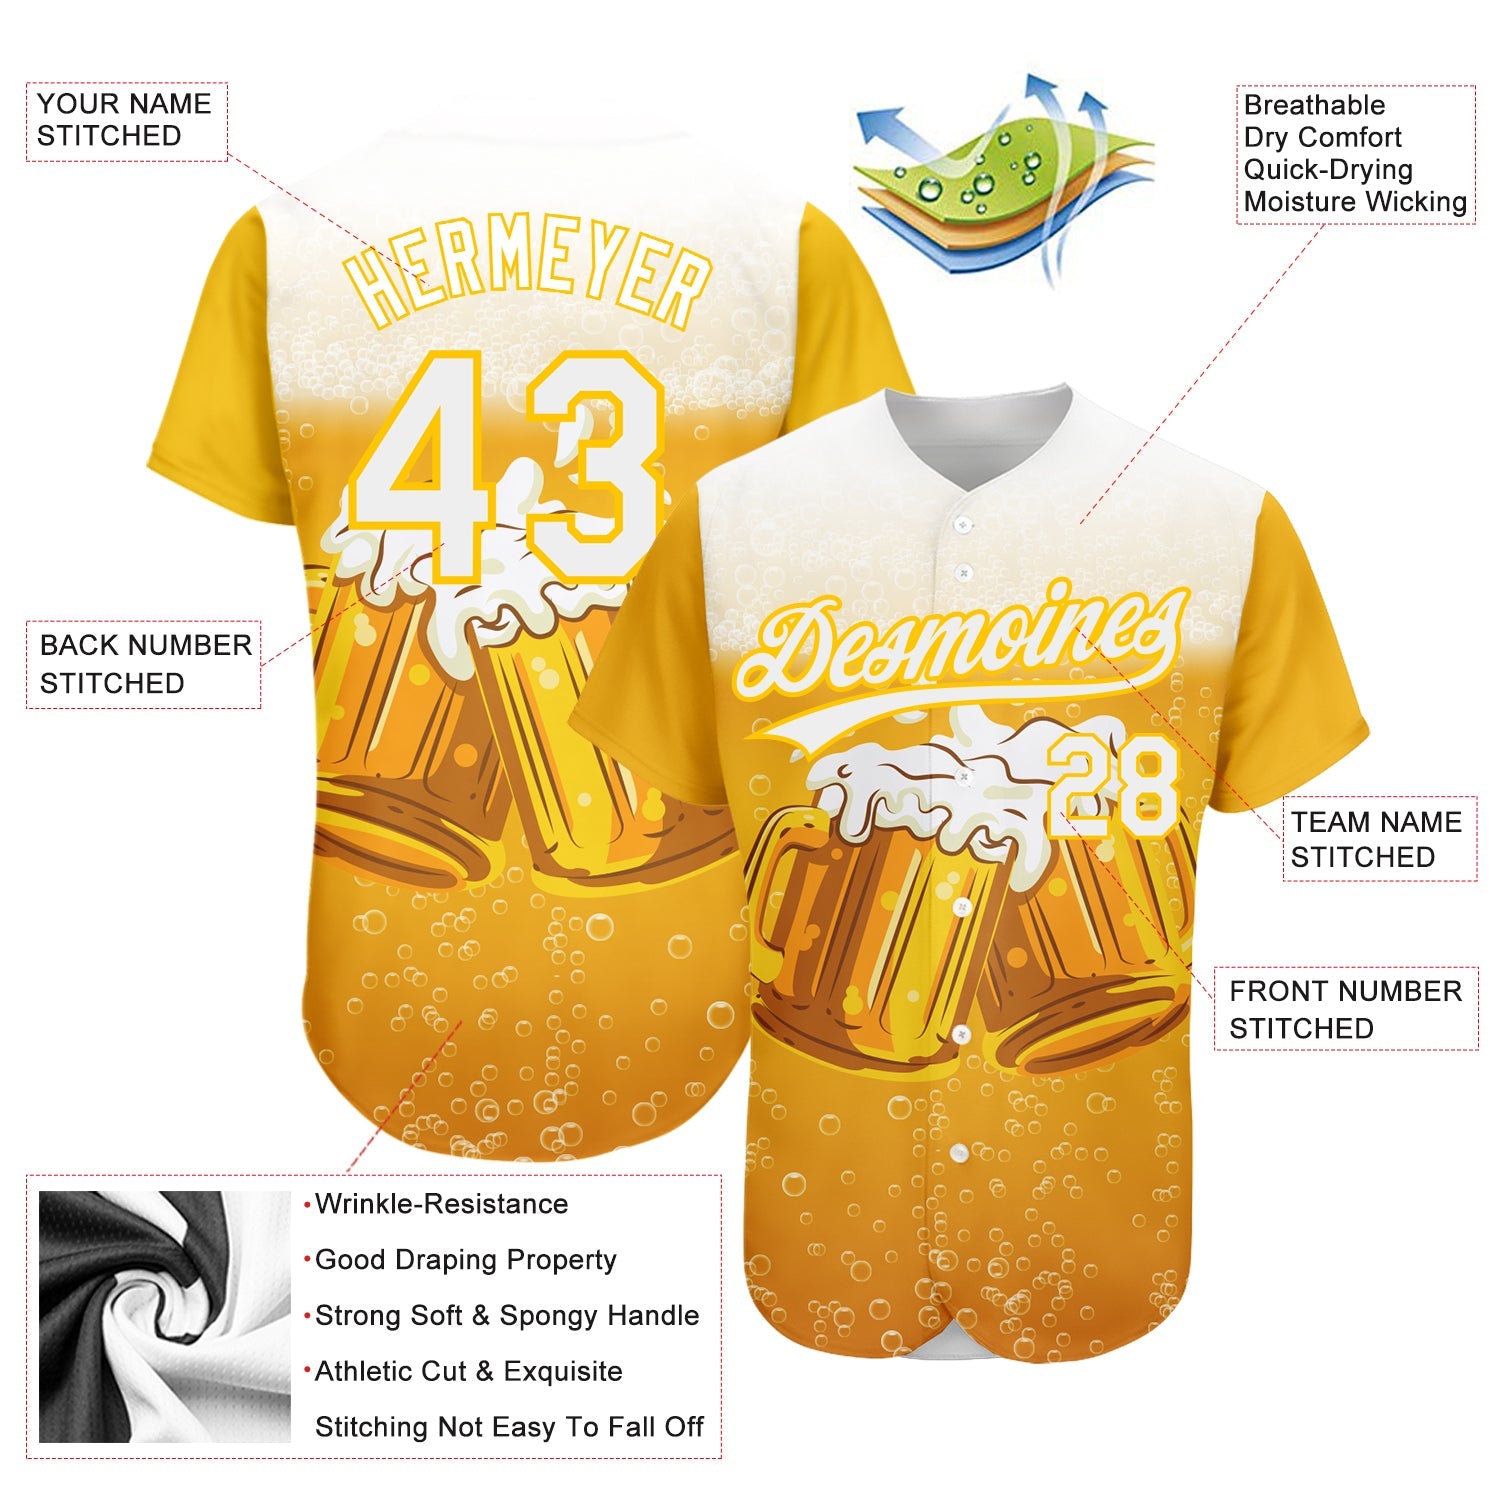 Benutzerdefiniertes, authentisches Baseball-Trikot zum Internationalen Biertag mit 3D-Muster in Gelb und Weiß